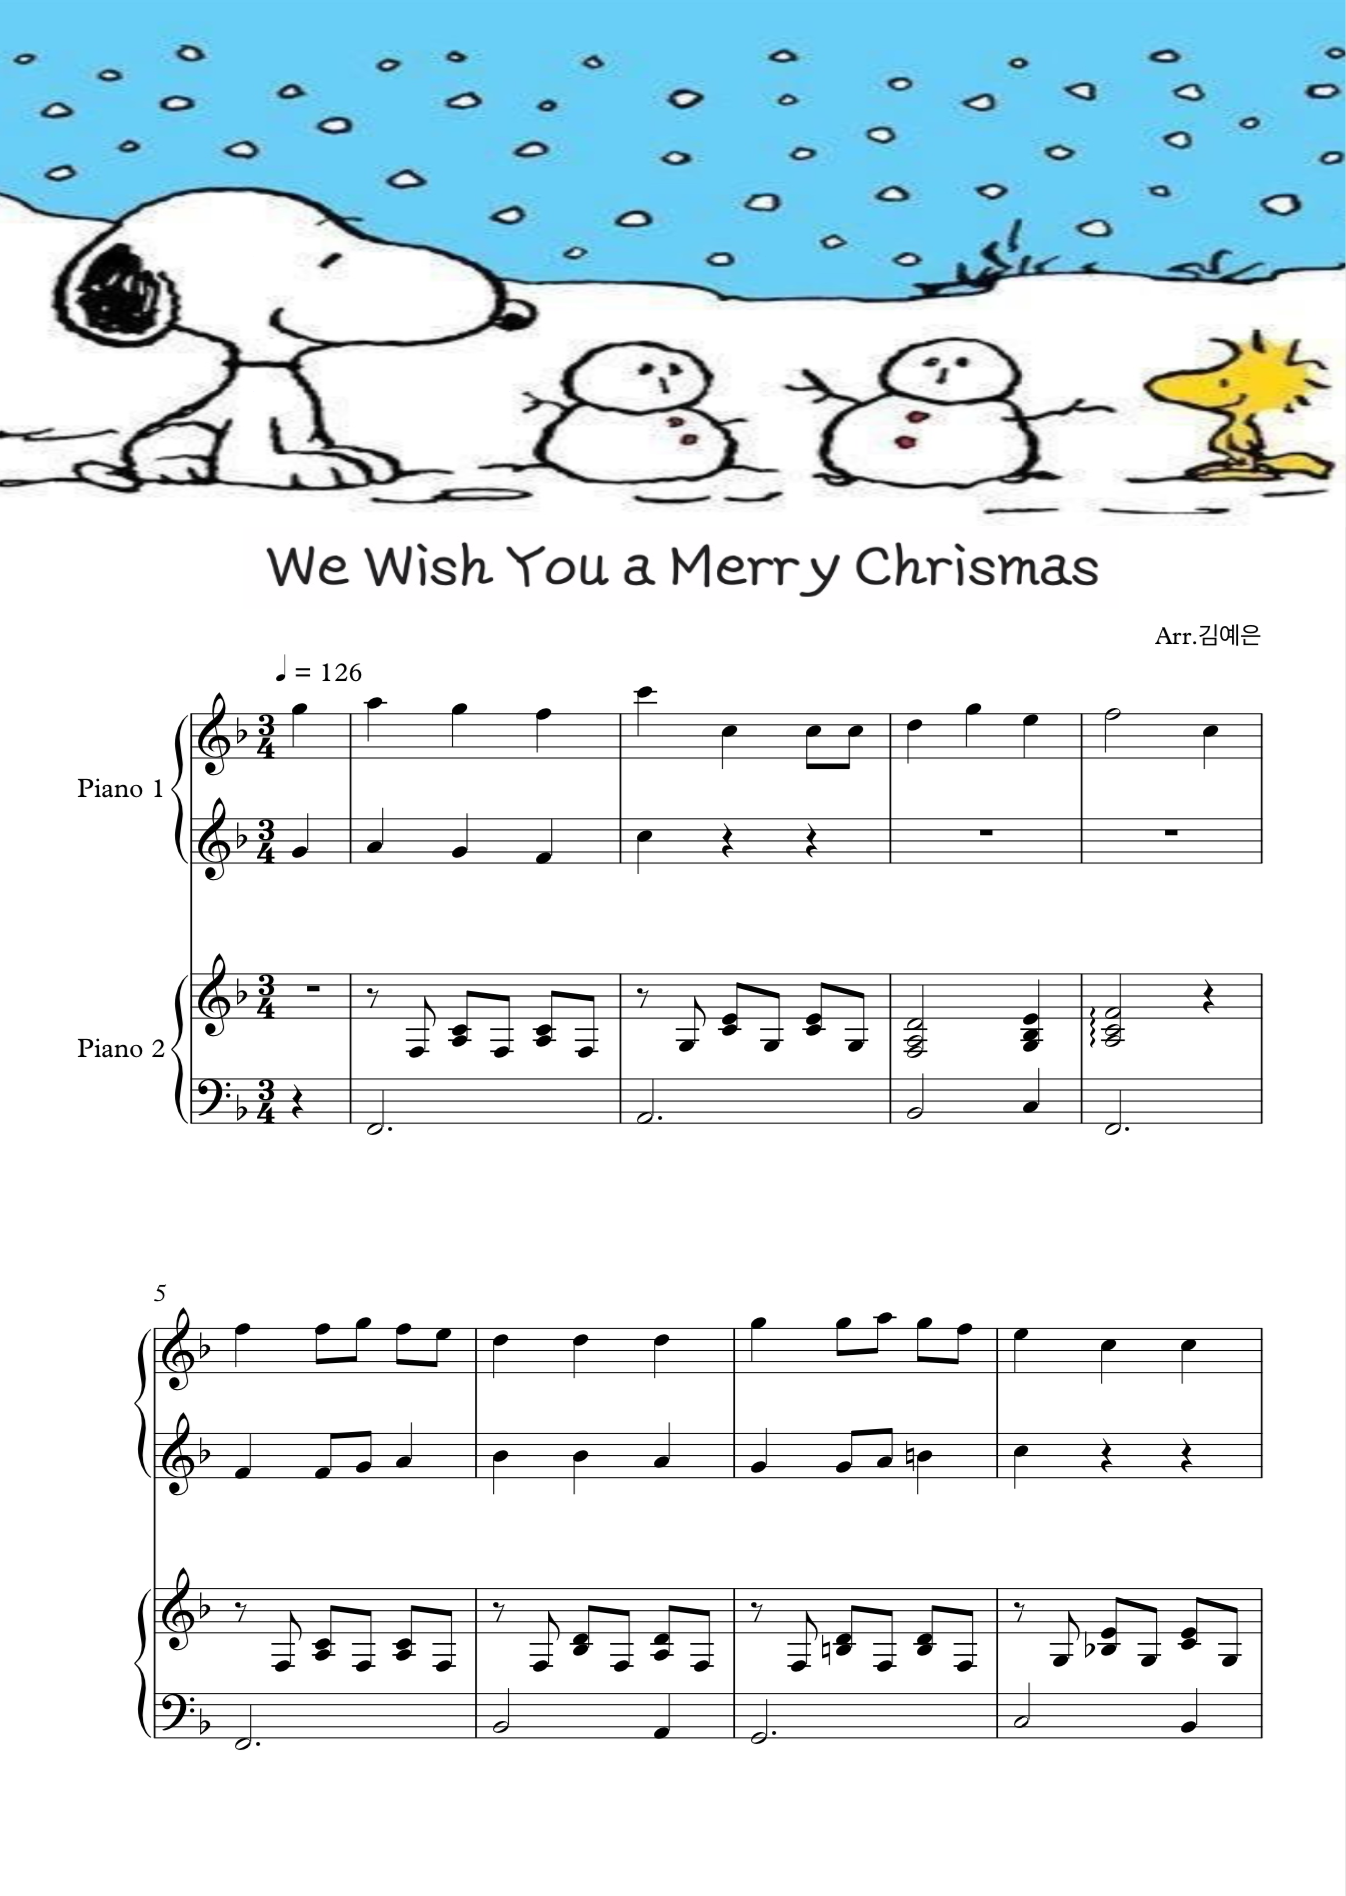 We Wish You a Merry Chrismas 피아노 4핸즈 악보